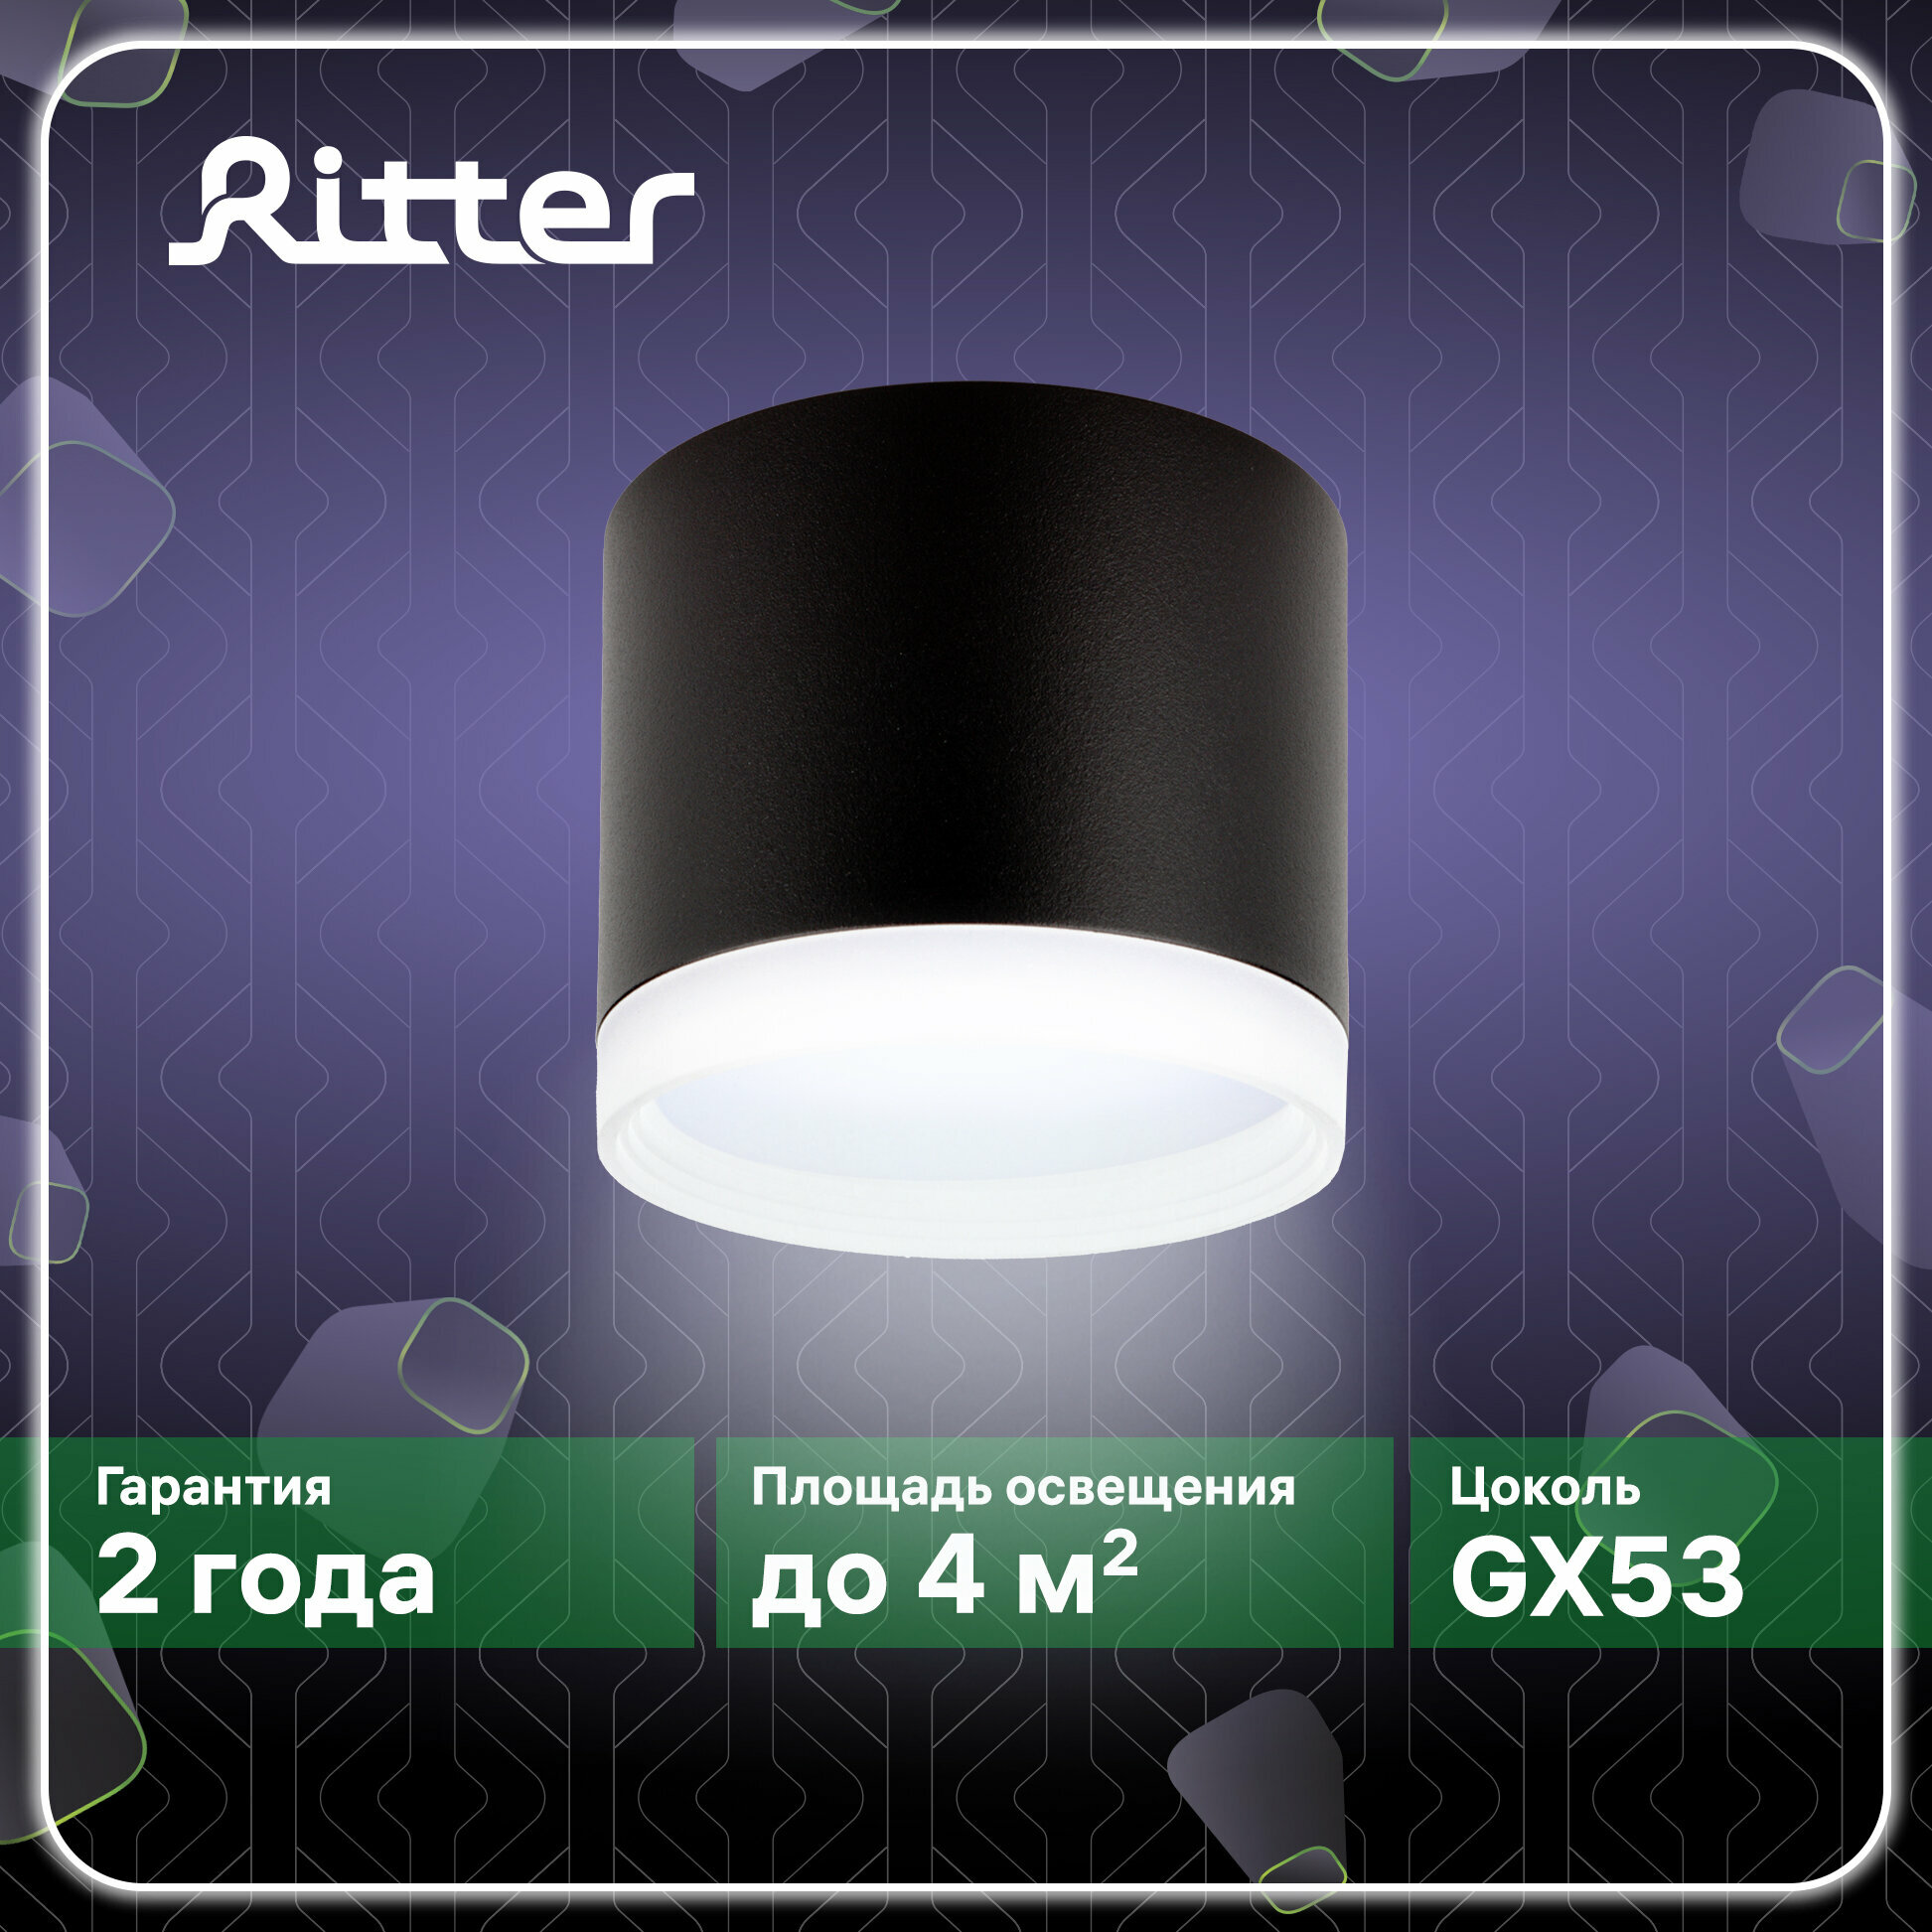 Светильник накладной Arton, цилиндр, 85х70мм, GX53, алюминий/стекло, черный, настенно-потолочный светильник для гостиной, кухни, Ritter, 59947 0